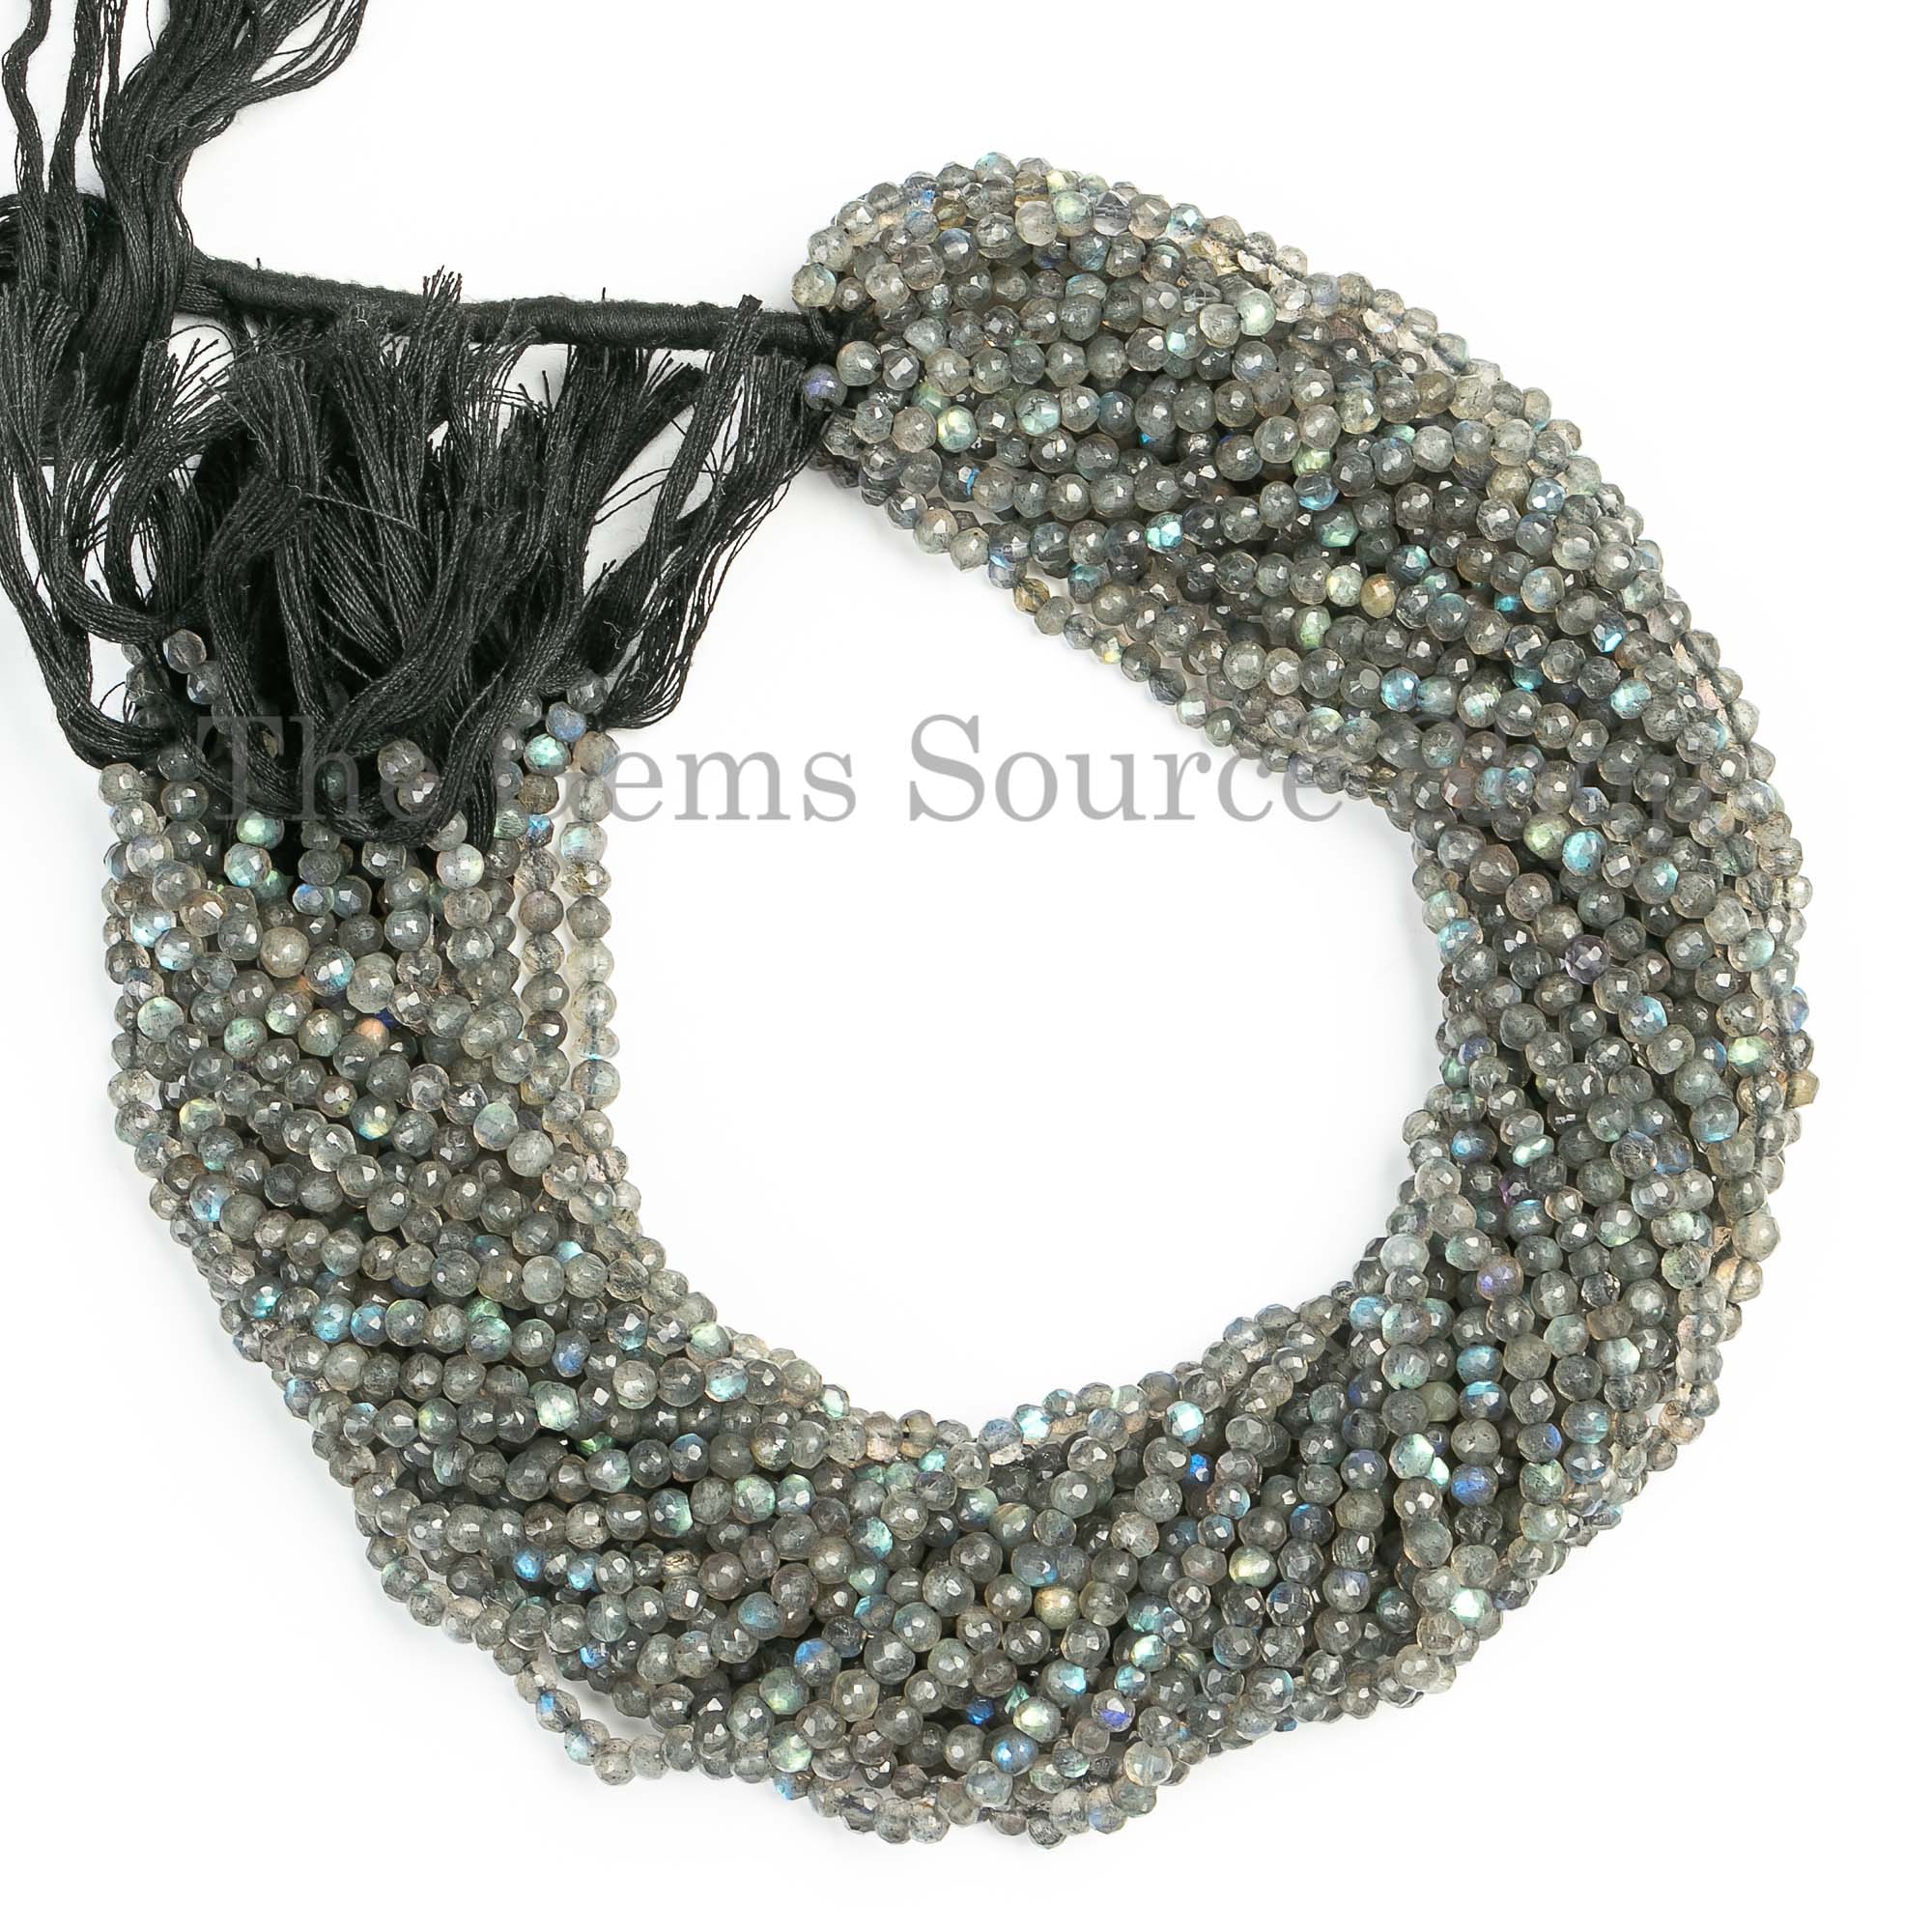 3.5-4mm Labradorite Beads, Labradorite Faceted Round Shape Beads, Labradorite Gemstone Beads